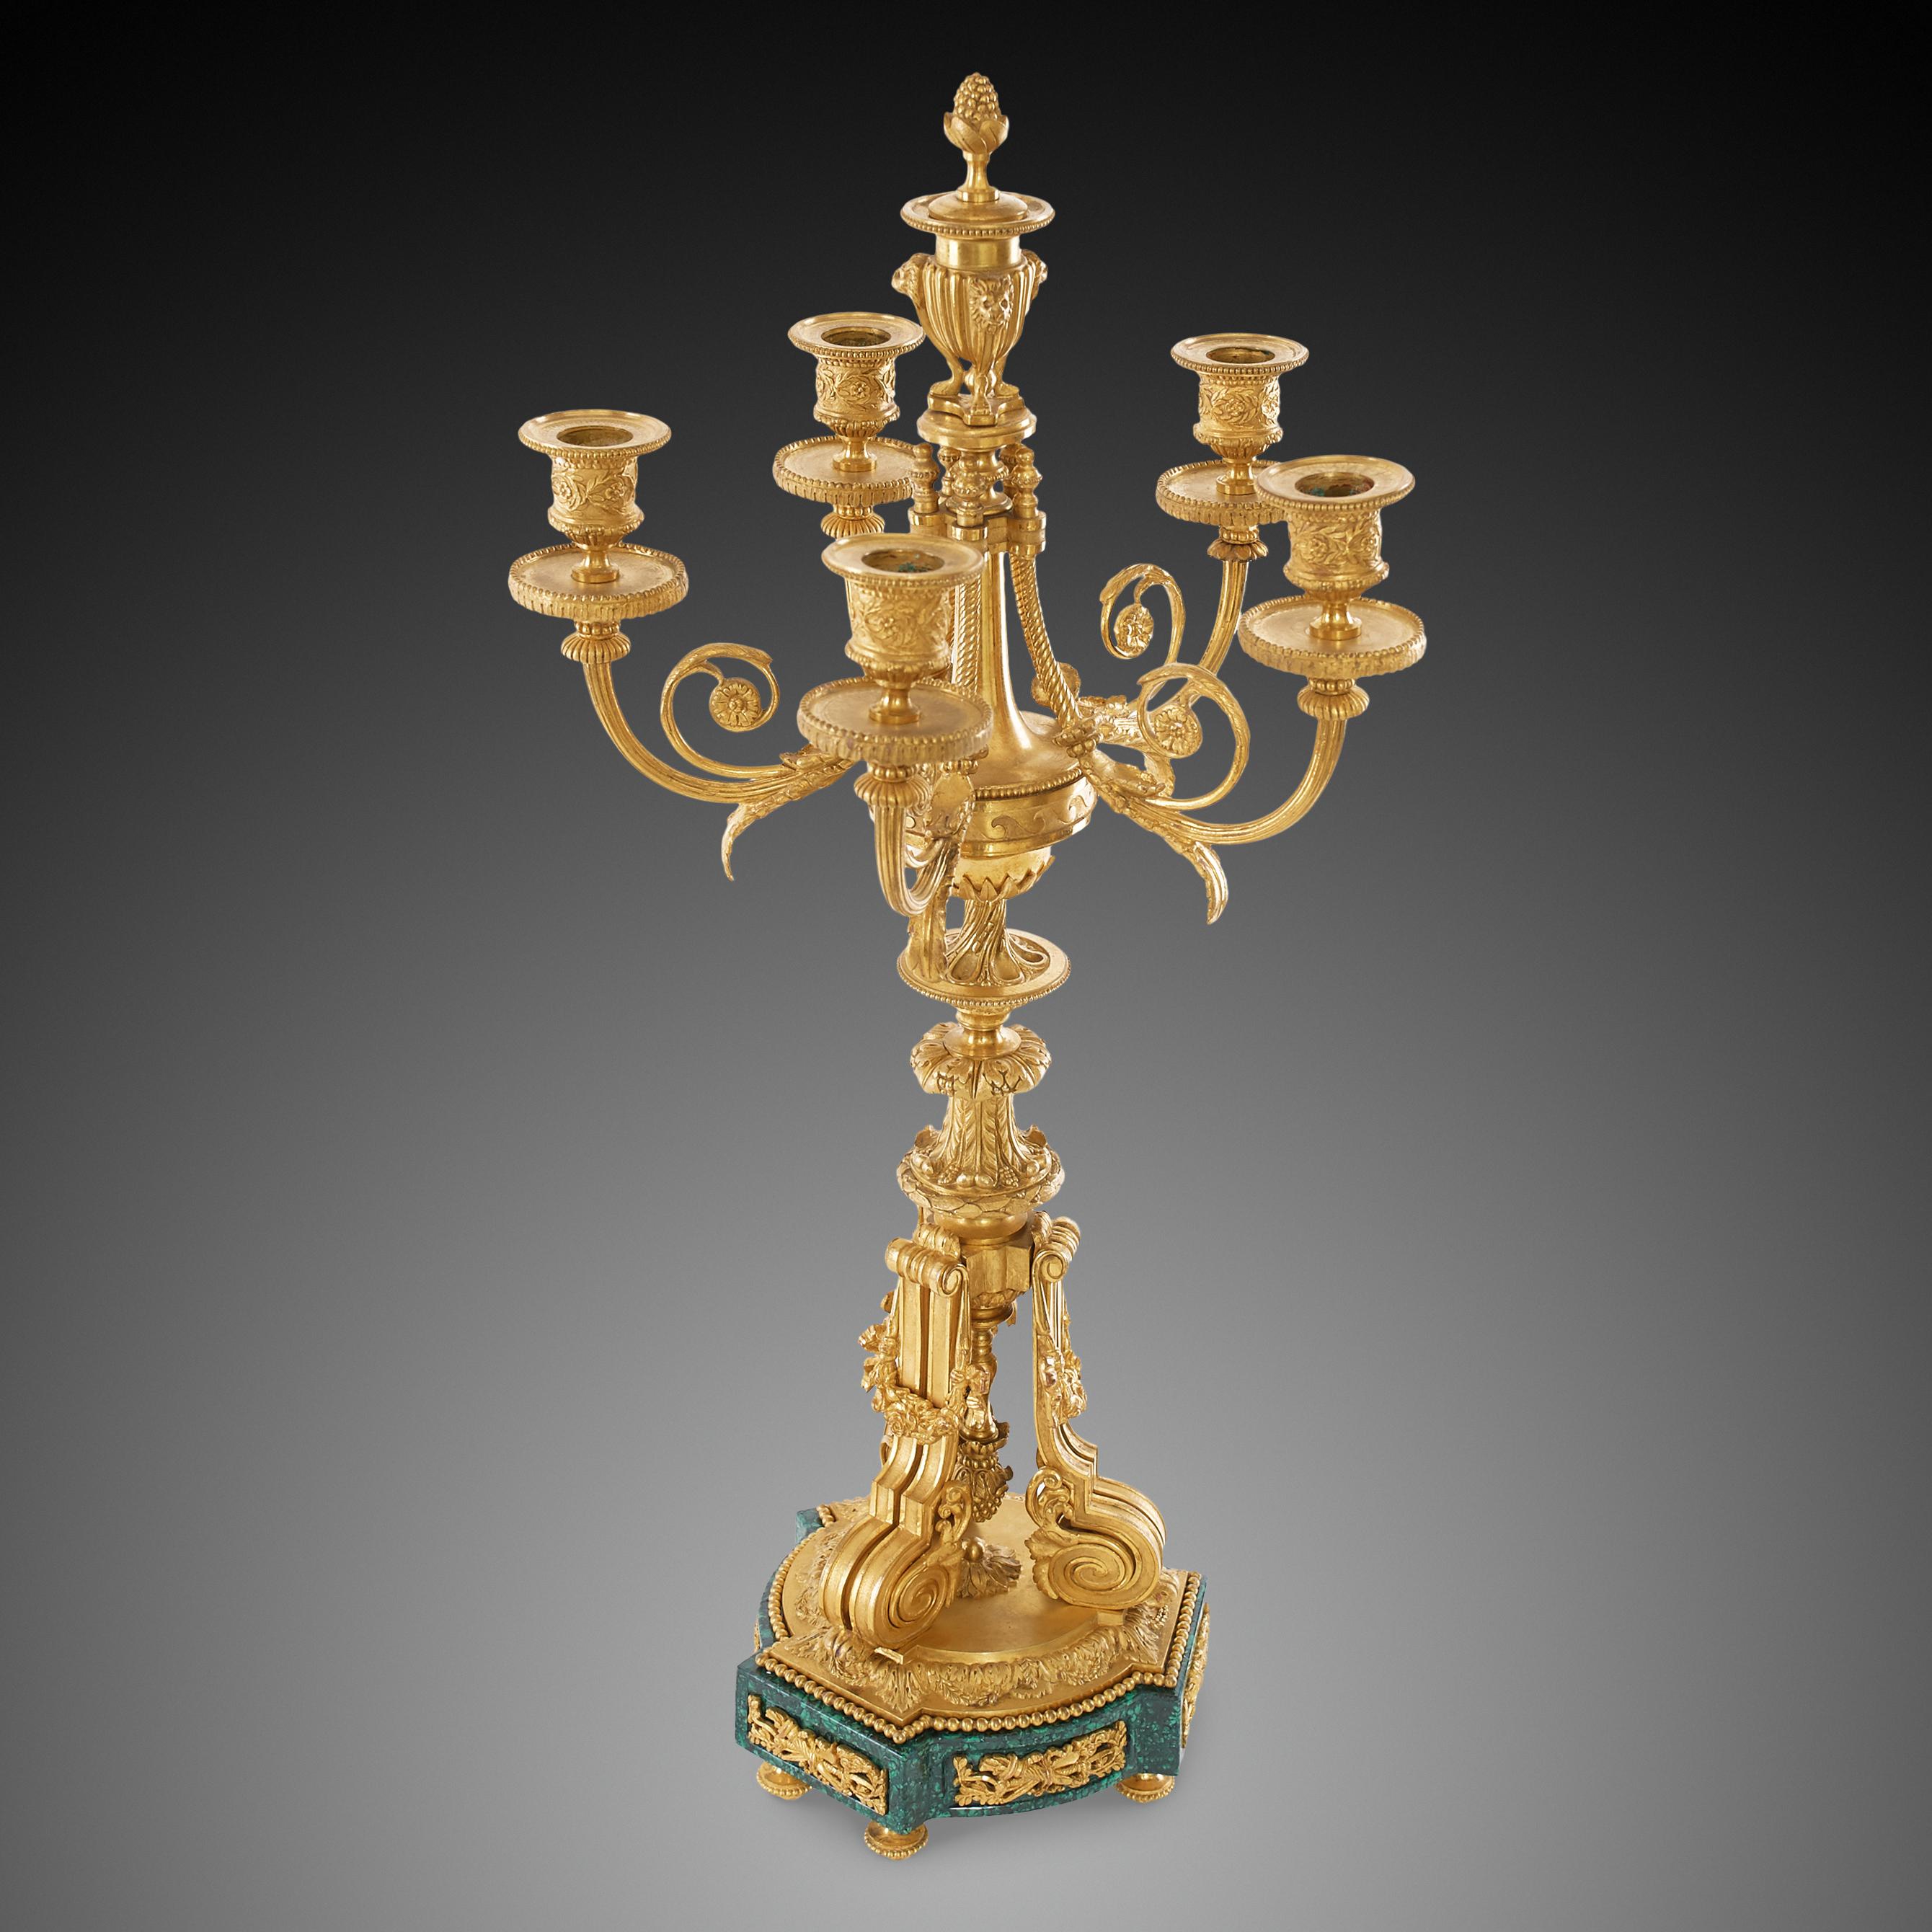 Cette paire est un bel exemple du style Louis XVI. Les chandeliers à cinq bras sont finis avec précision et savoir-faire. Les supports soutiennent le corps du candélabre en forme de lampe ou en bronze doré richement orné.La base est en belle